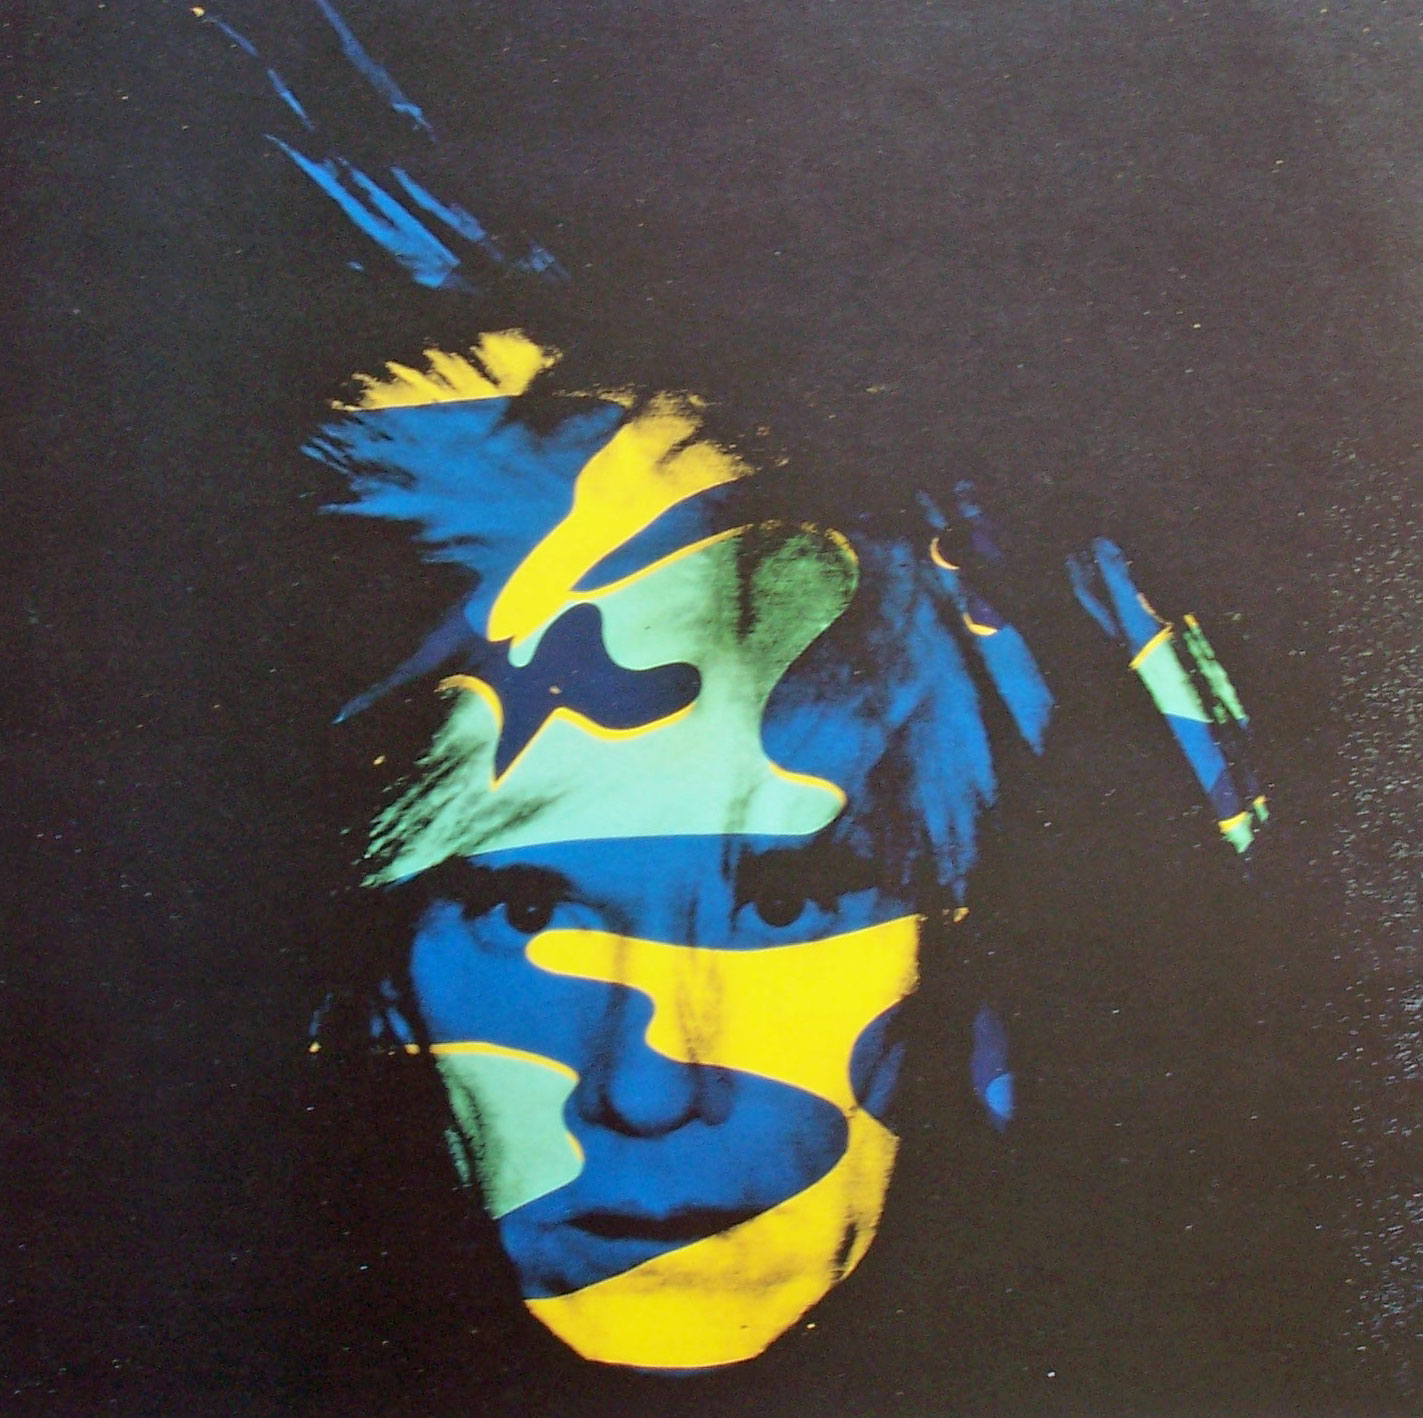 zelfportret van Andy Warhol (zwarte achtergrond)